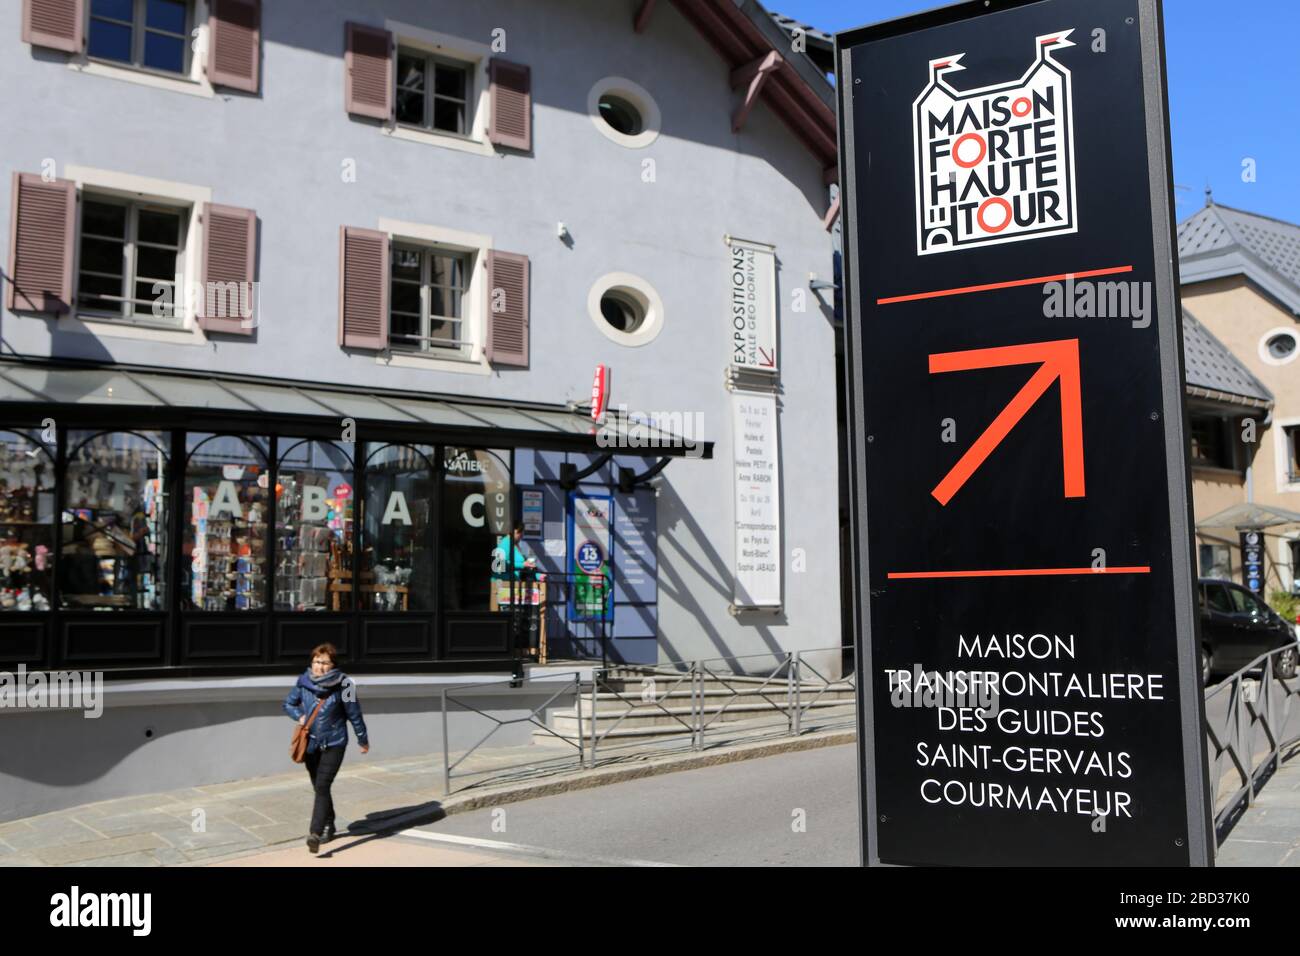 Maison transfrontalière des guides. Saint-Gervais. Courmayeur. Panneau touristique. Saint-Gervais-les-Bains. Haute-Savoie. France. Stock Photo